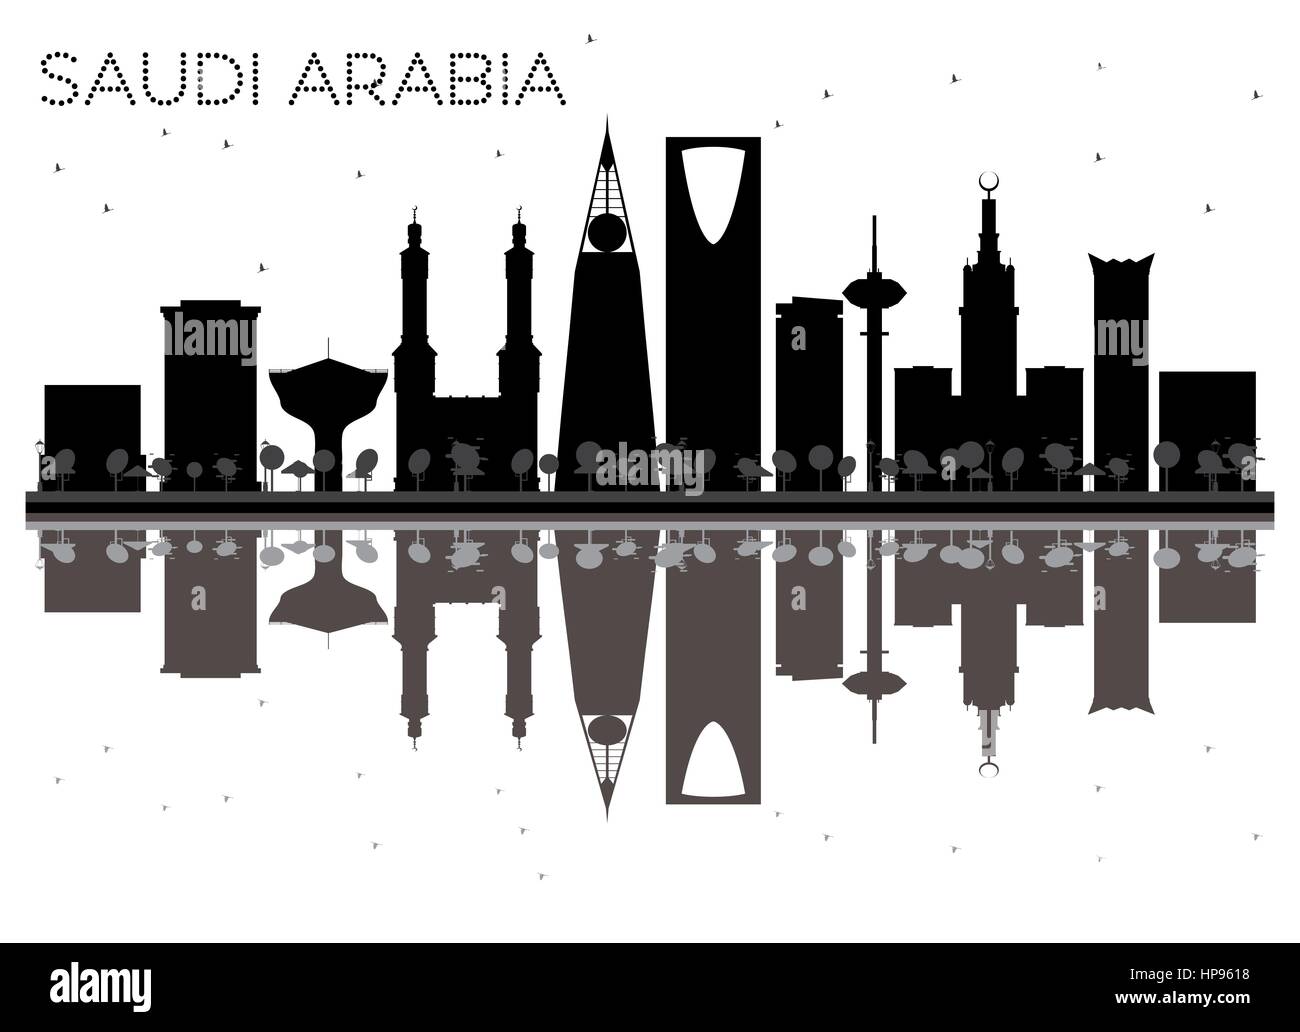 Saudi-arabien Skyline schwarze und weiße Silhouette mit Reflexionen. Vector Illustration. einfache flache Konzept für Tourismus Präsentation, Banner, Plakat o Stock Vektor